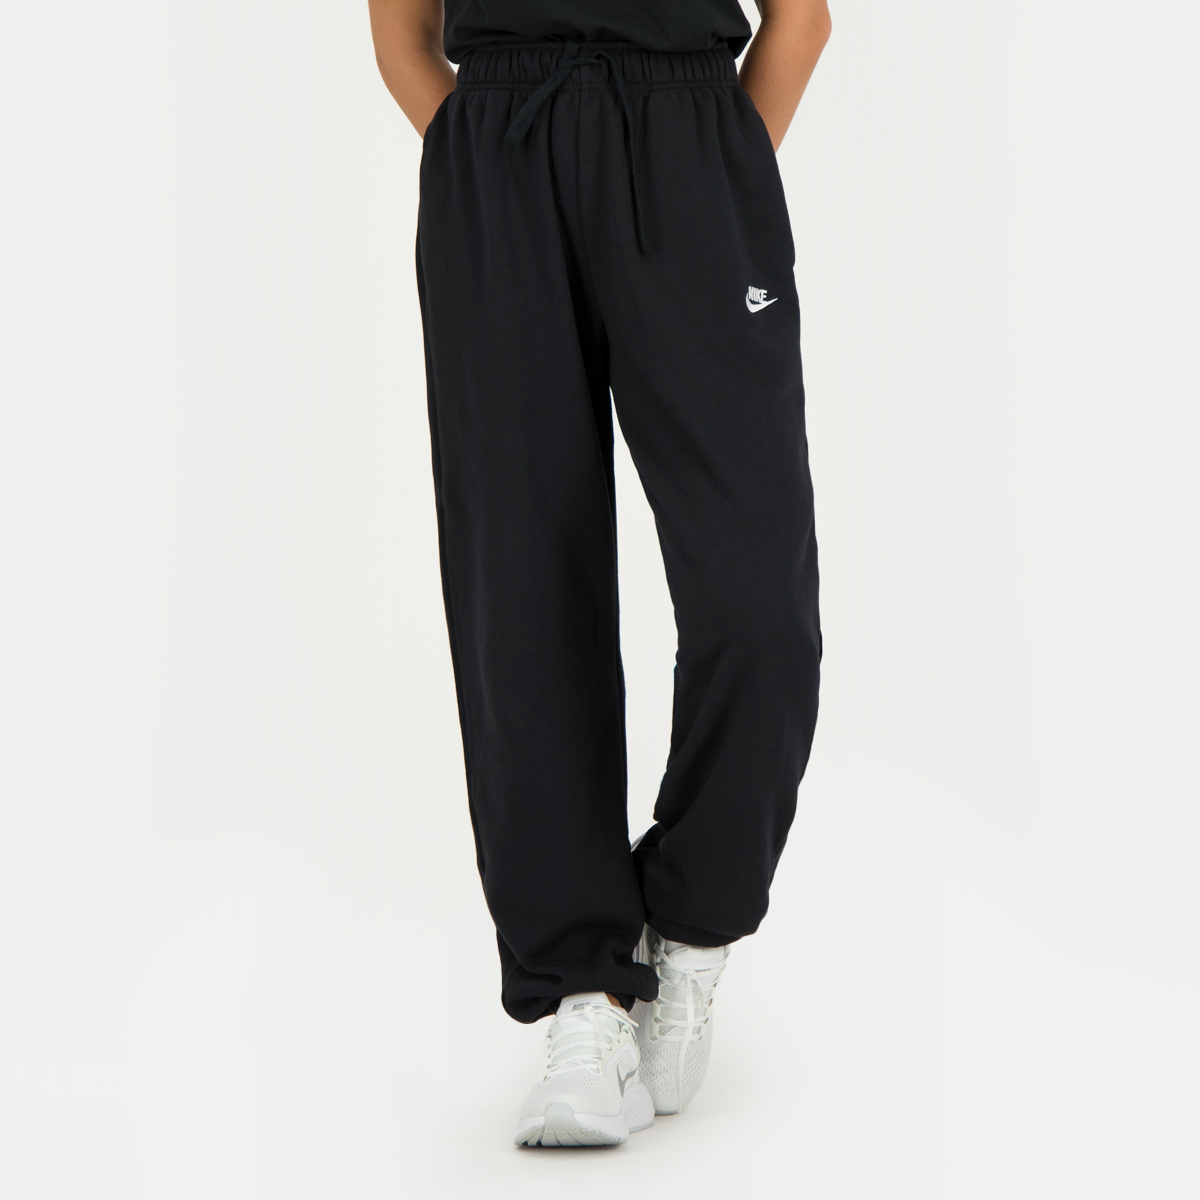 Nike Sportswear Essential Women's Fleece Pants.